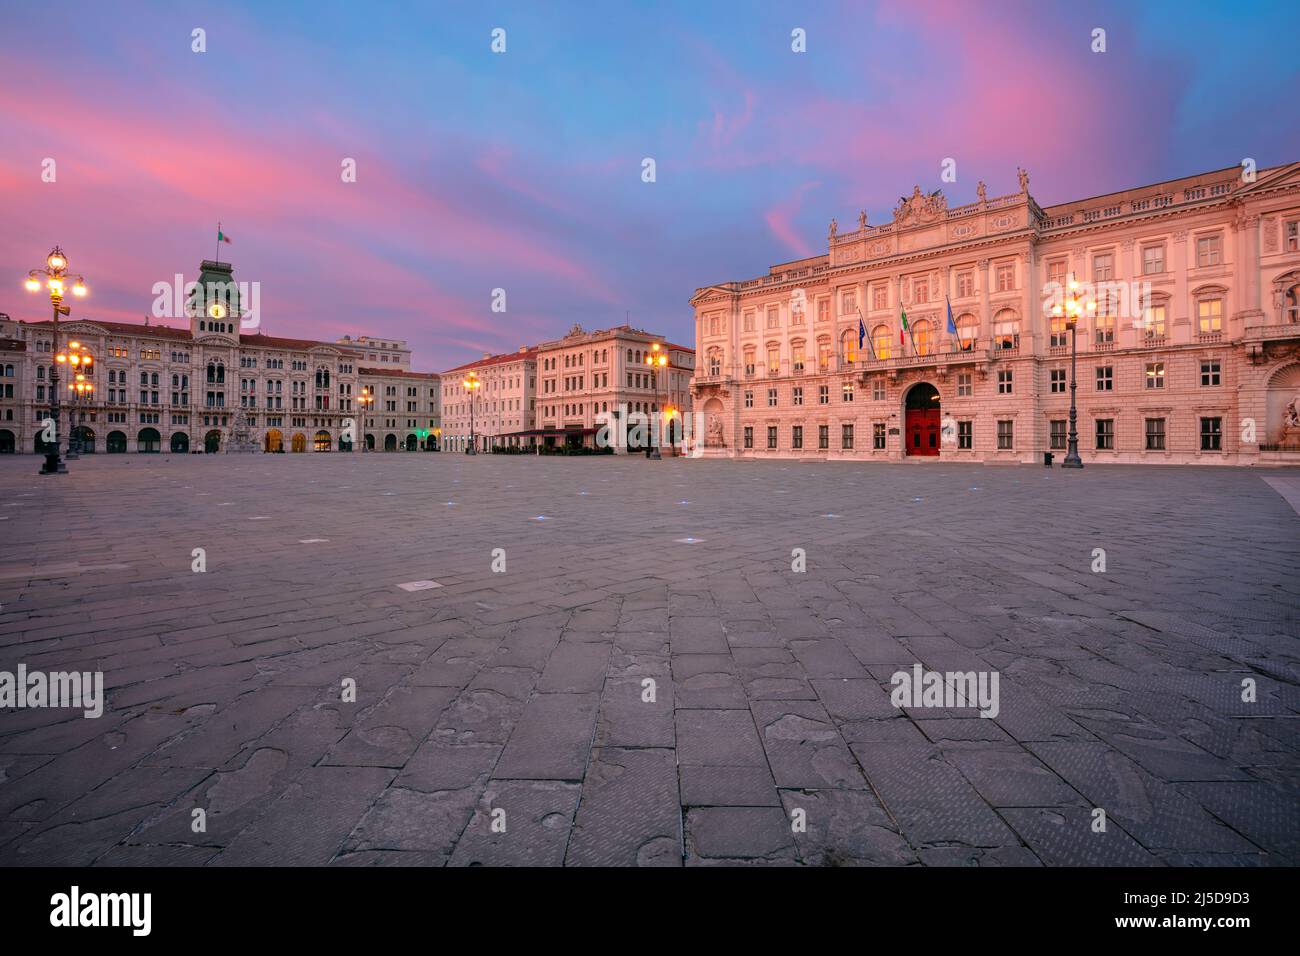 Trieste, Italia. Immagine del paesaggio urbano del centro di Trieste, Italia con la piazza principale all'alba drammatica. Foto Stock